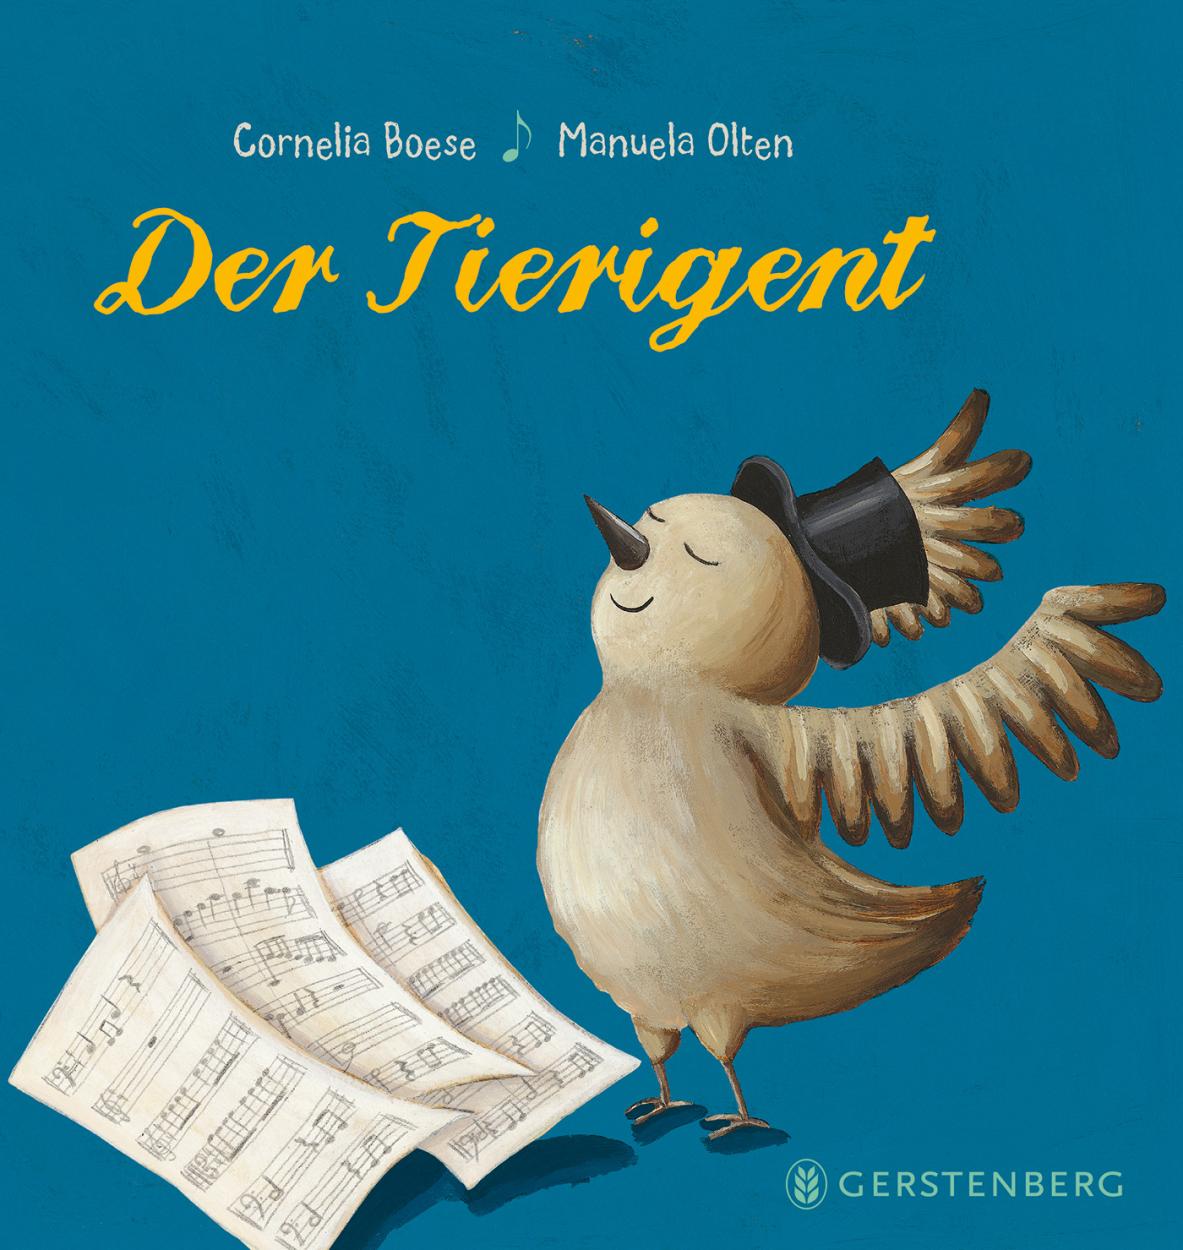 Buchcover "Der Tierigent", Gerstenberg